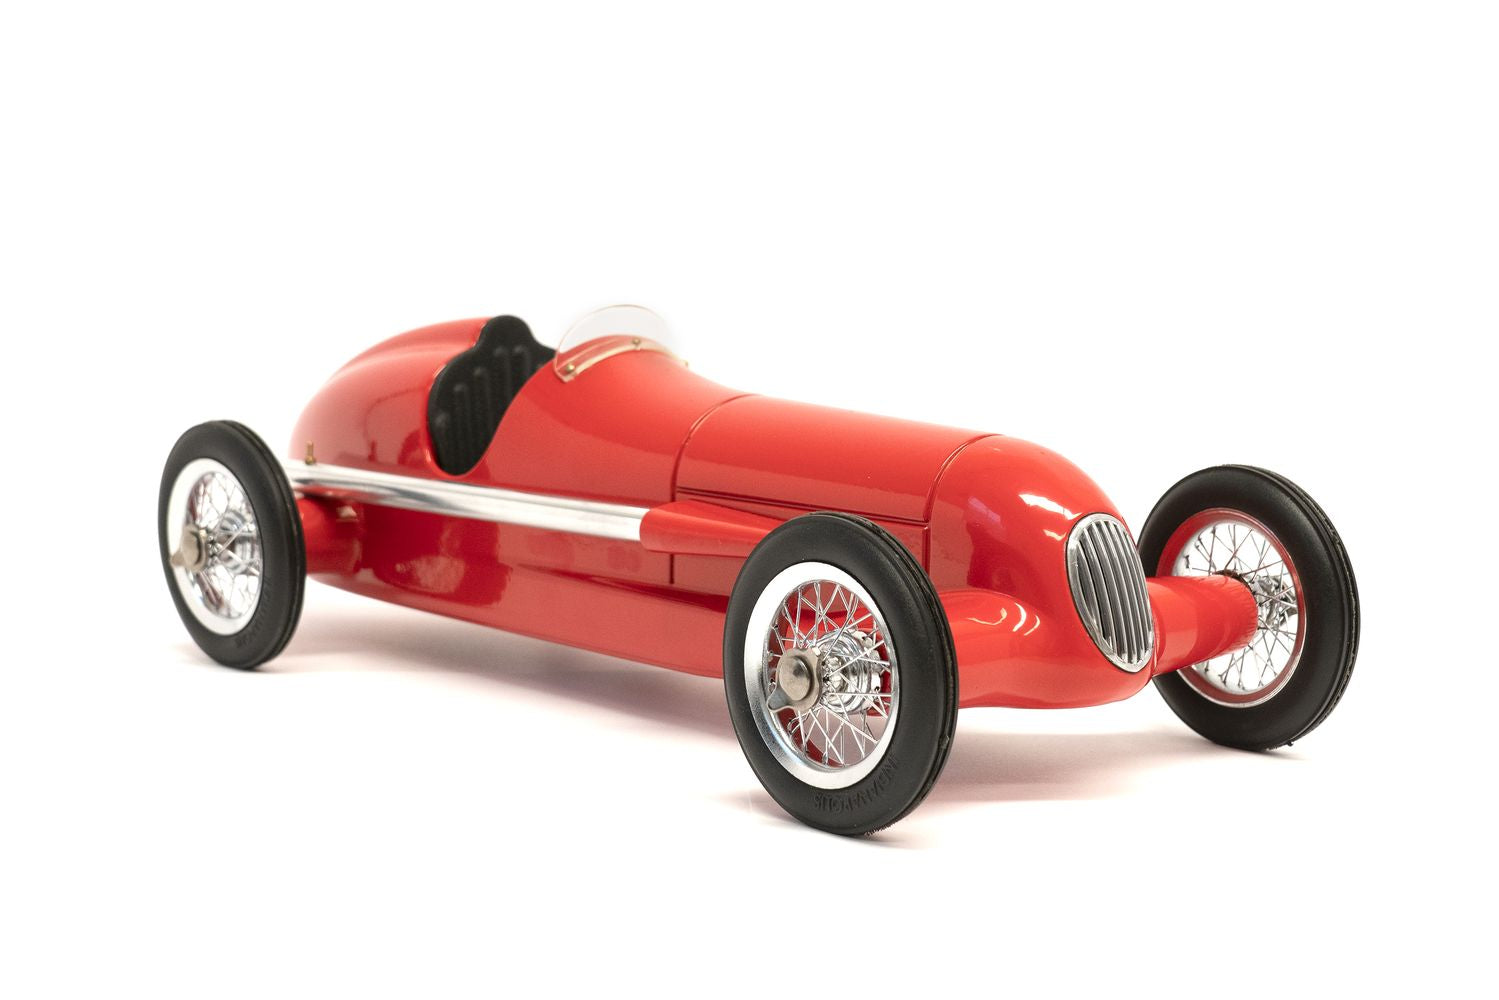 Authentic Models Racer Modelbil, Rød